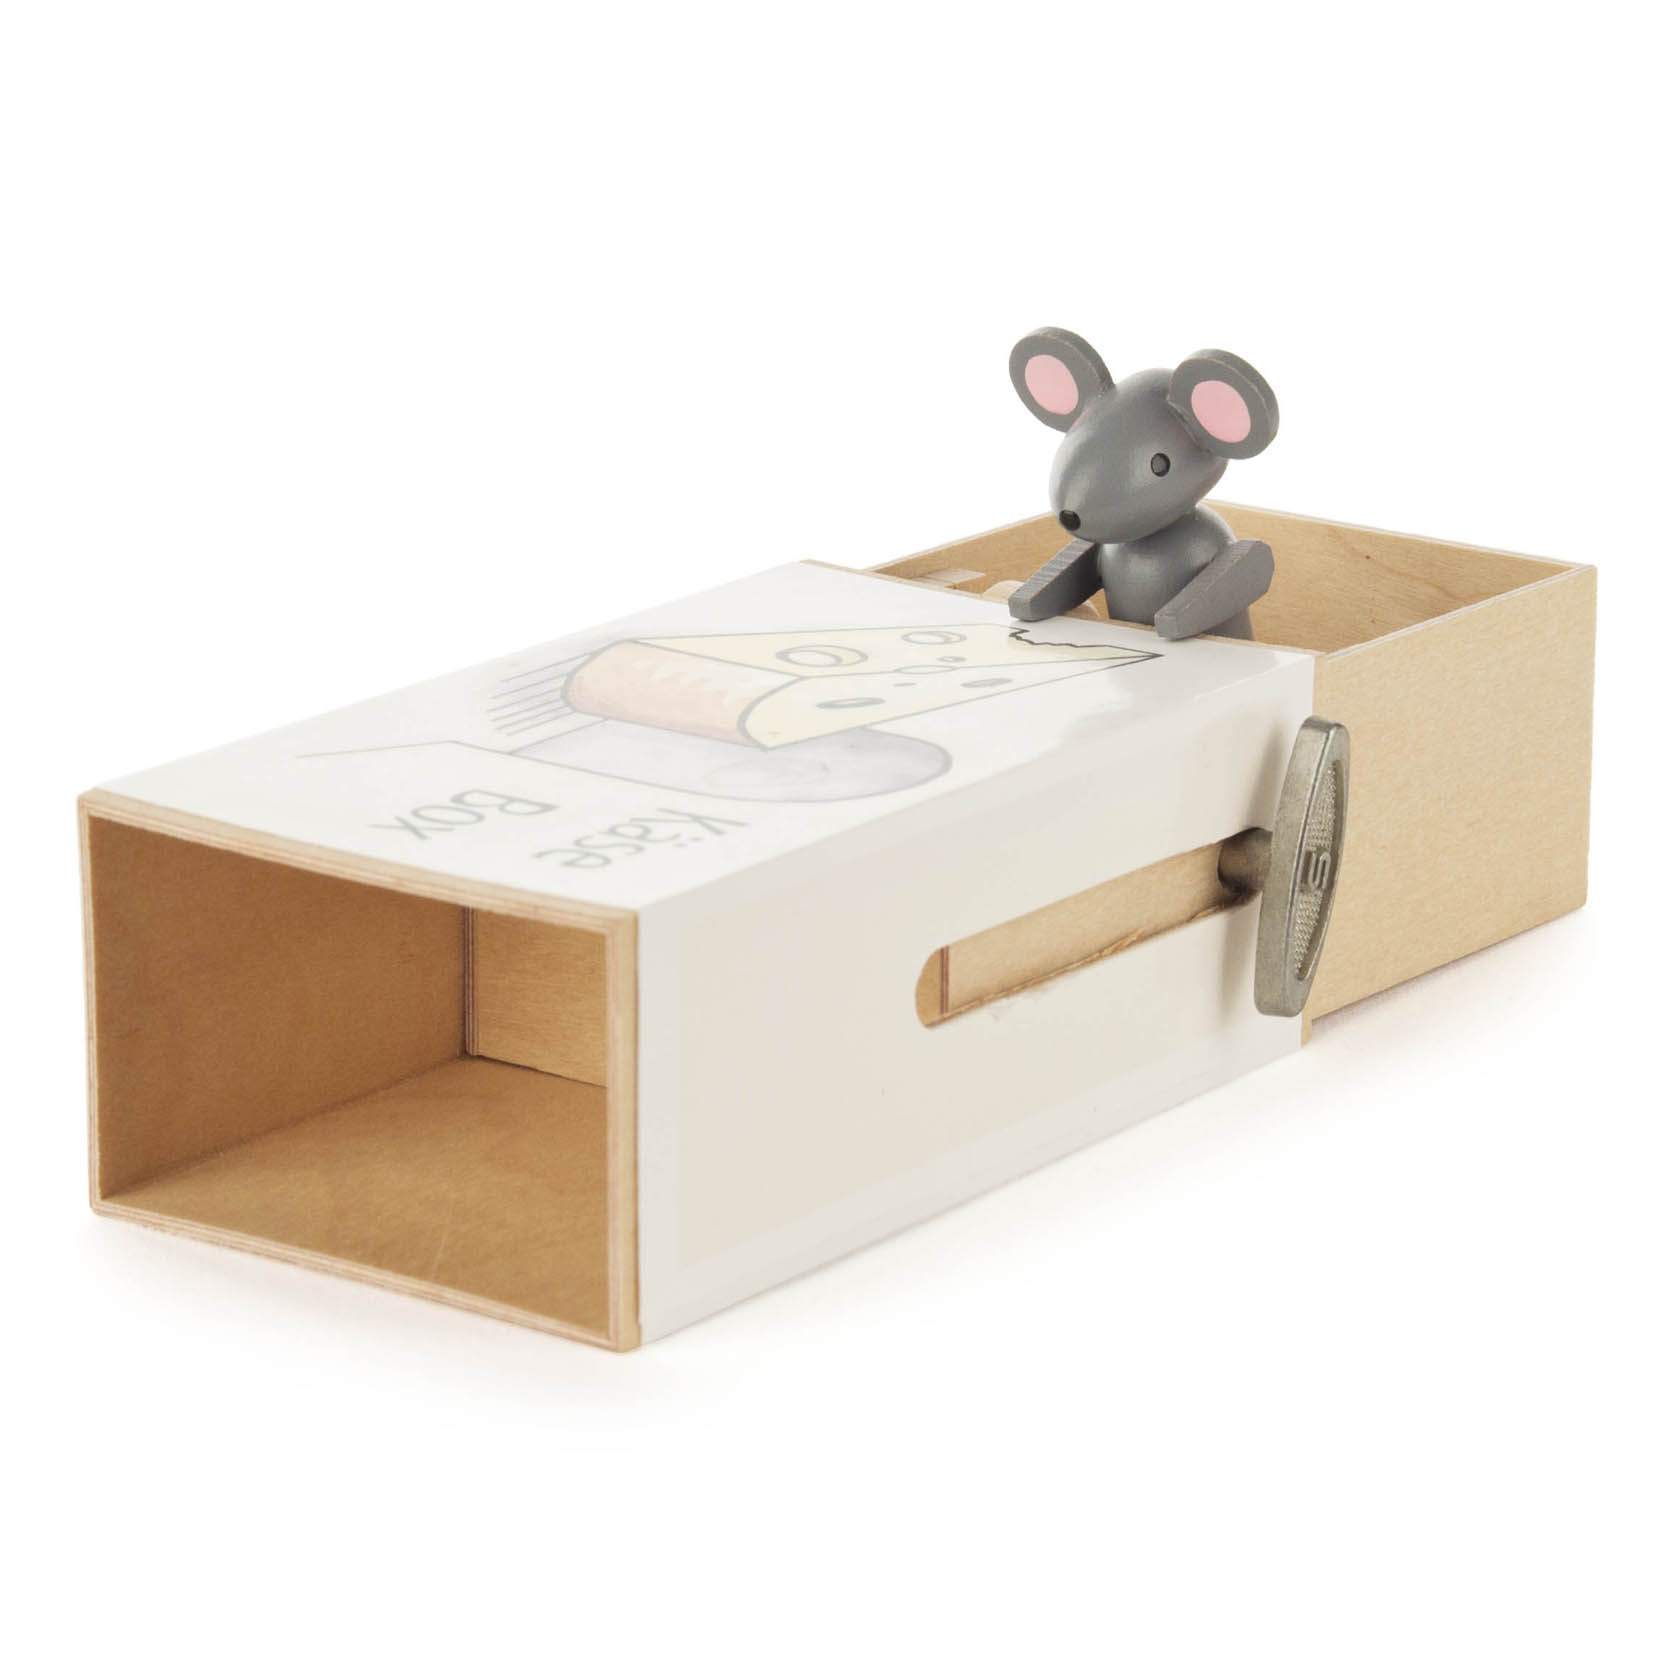 Schiebebox "Käse-Box" mit Maus Melodie: Small World